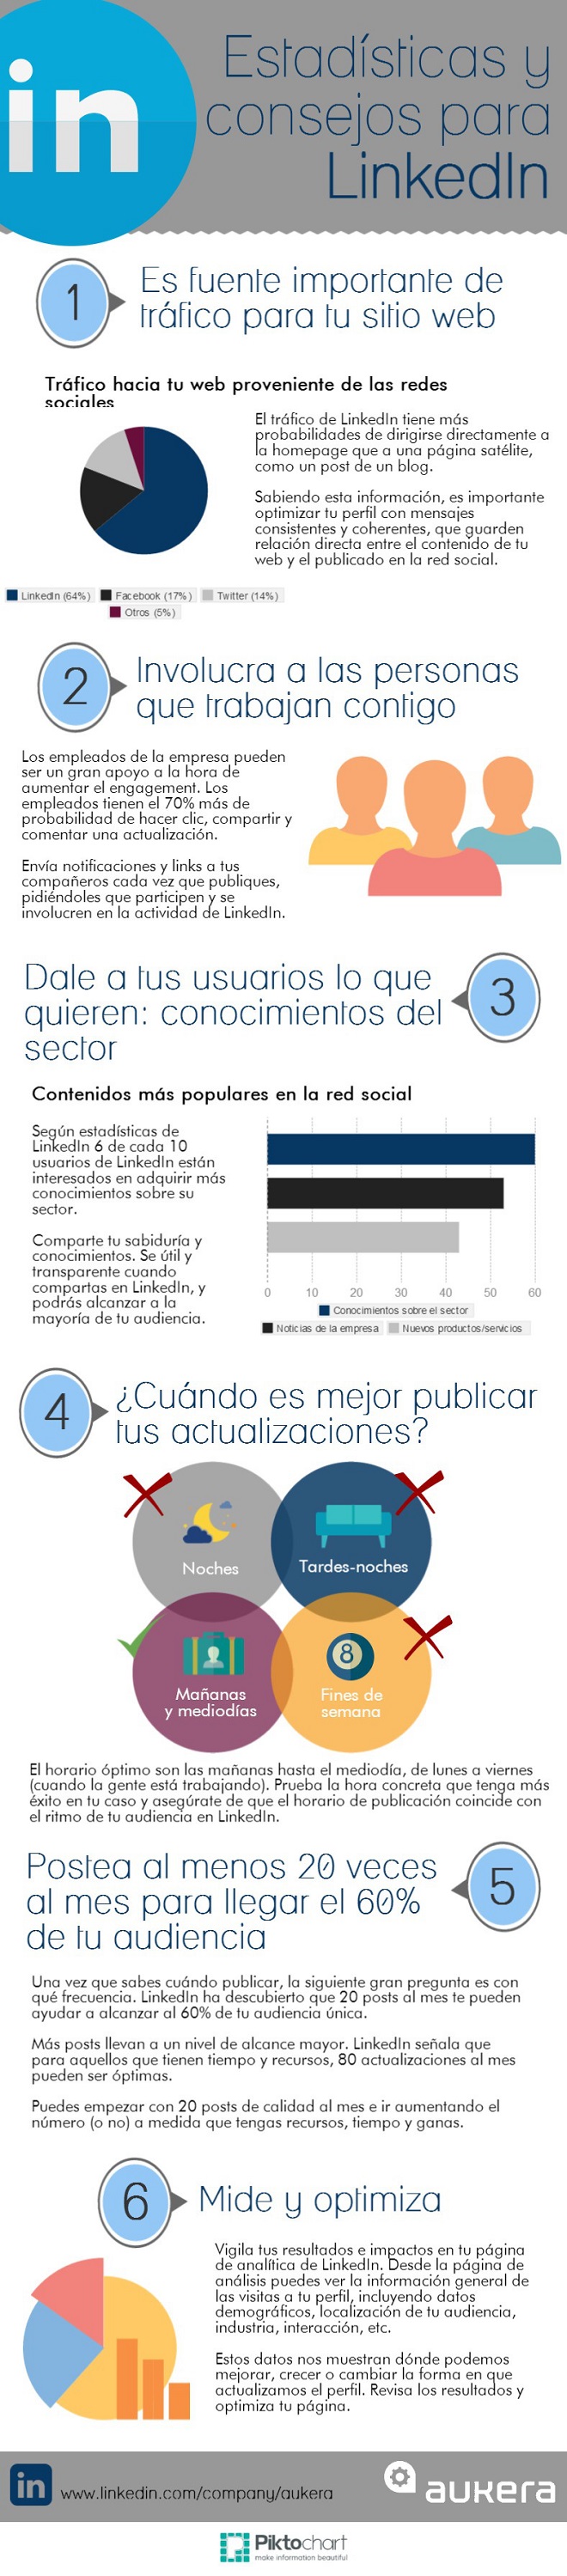 infografia_estadisticas_y_consejos_para_linkedin